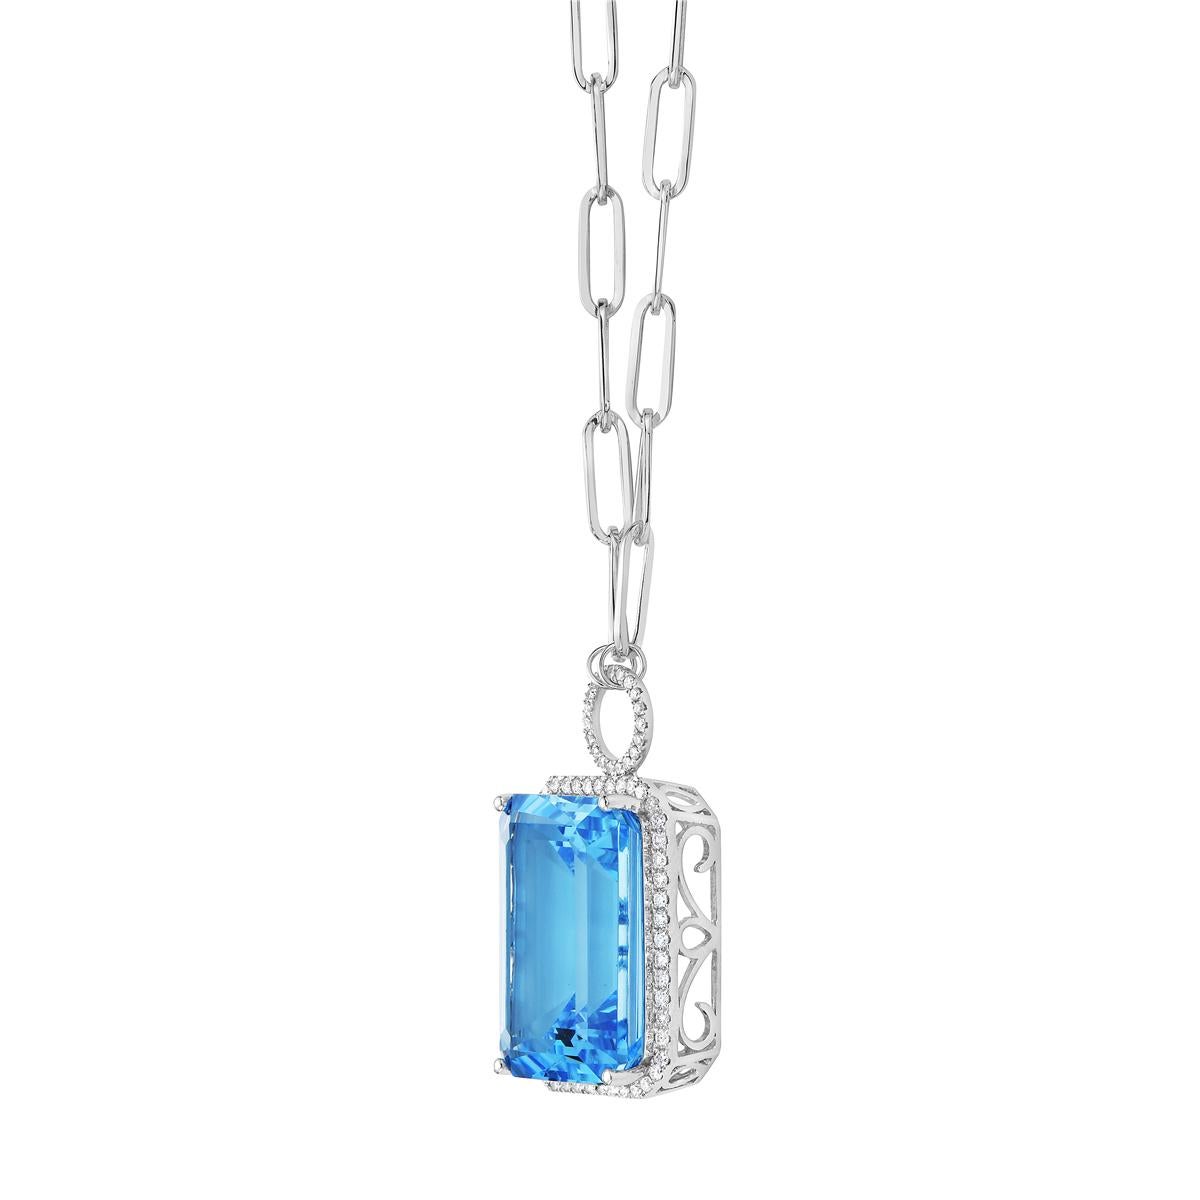 Mit diesem exquisiten Halbedelstein-Halsband aus Schweizer Blautopas und Diamanten stehen Stil und Glamour im Rampenlicht. Dieses 14-karätige Collier im Kissenschliff besteht aus 3,3 Gramm Gold, 1 himmelblauen Topas mit insgesamt 29,57 Karat und ist